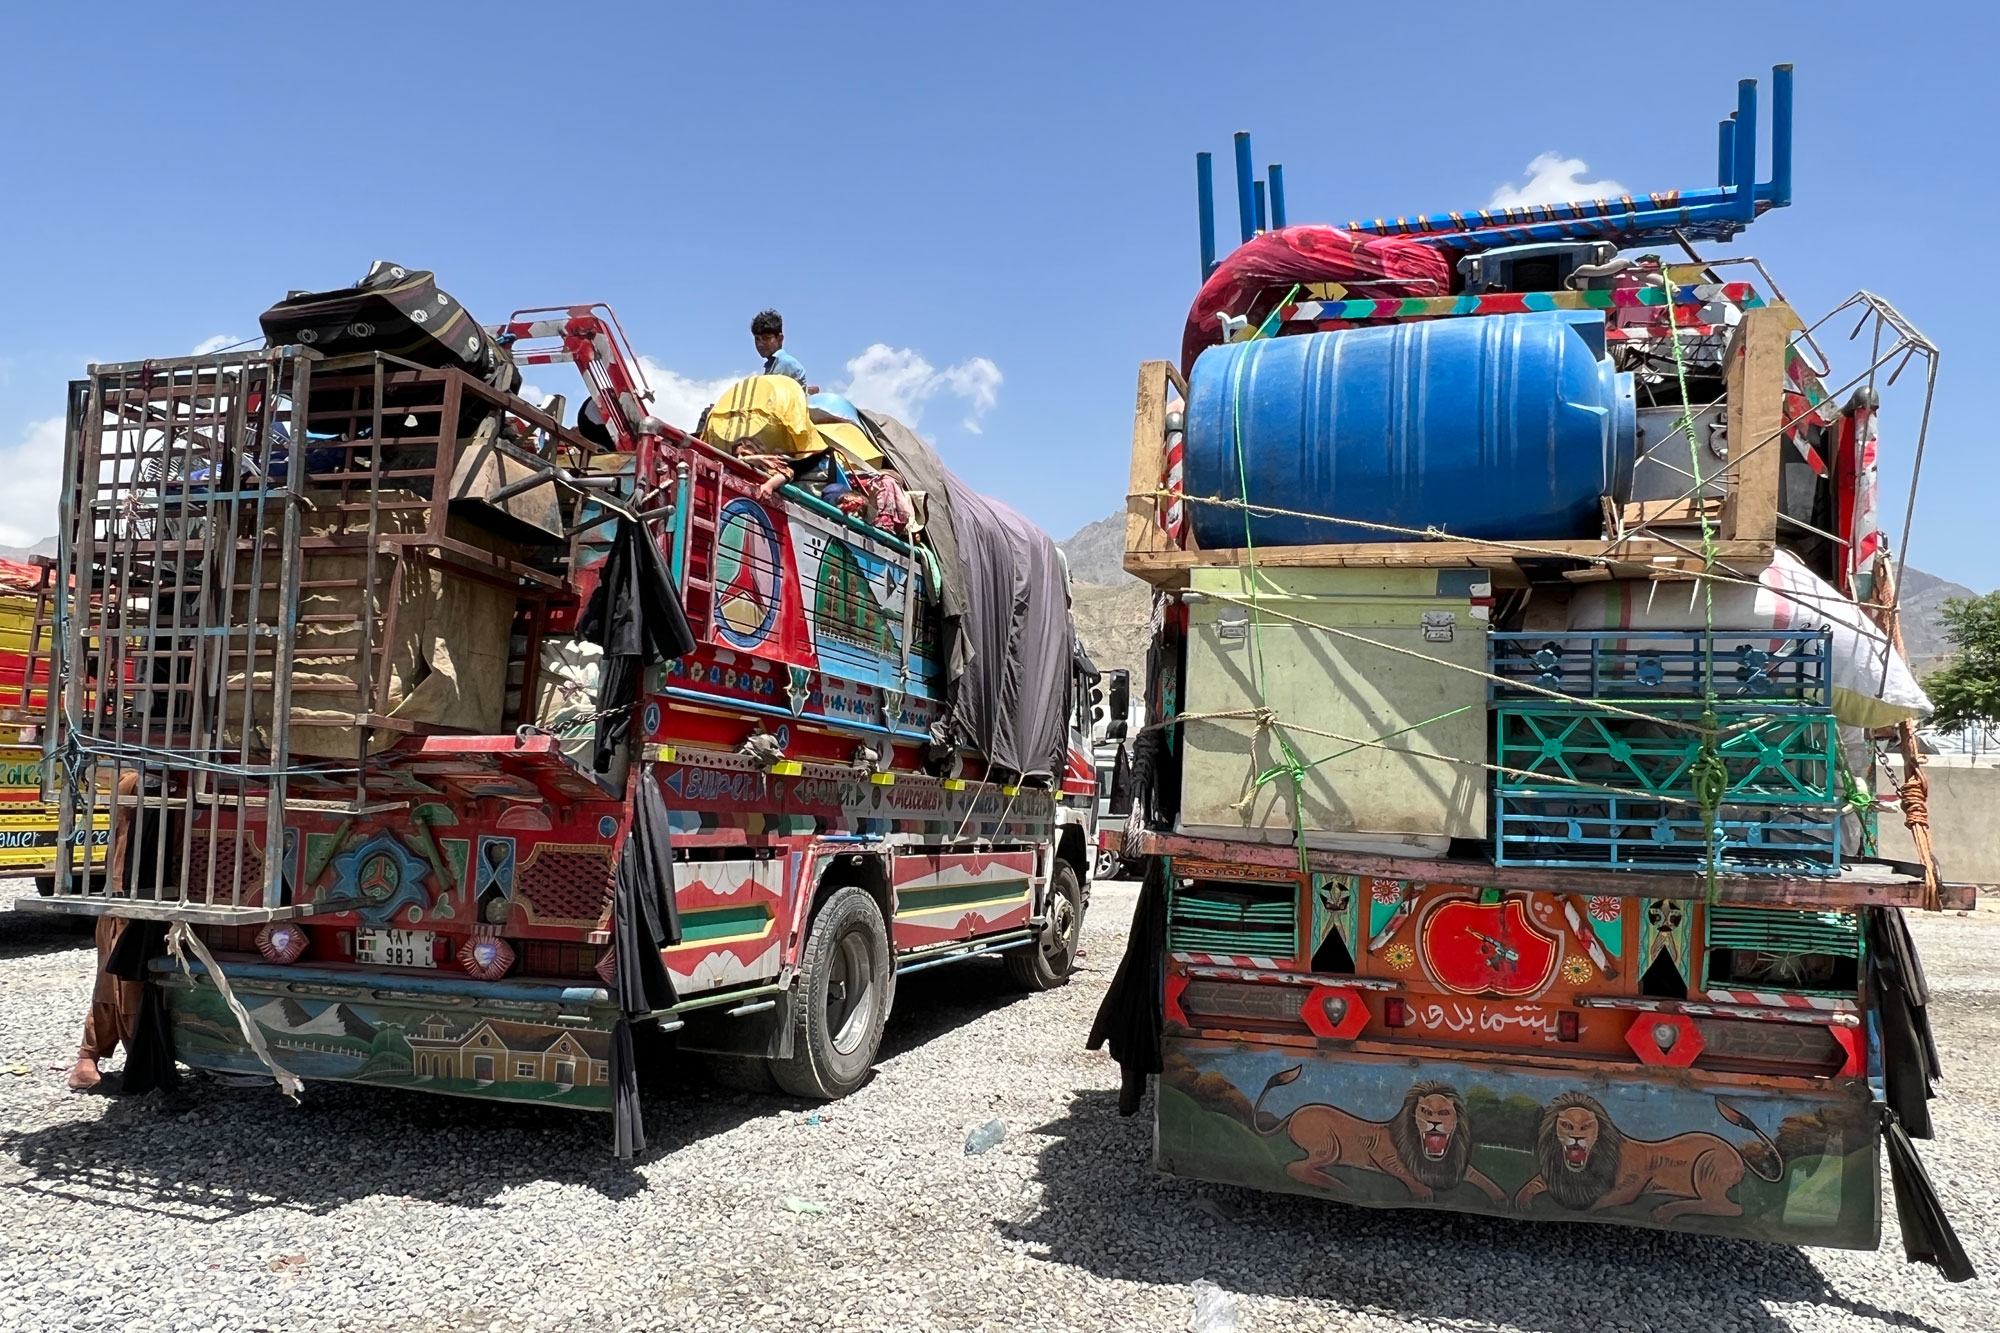 ٹرکوں پر لدا ایک اففان مہاجر خاندان کا سامان دارالحکومت کابل پہنچا ہے۔